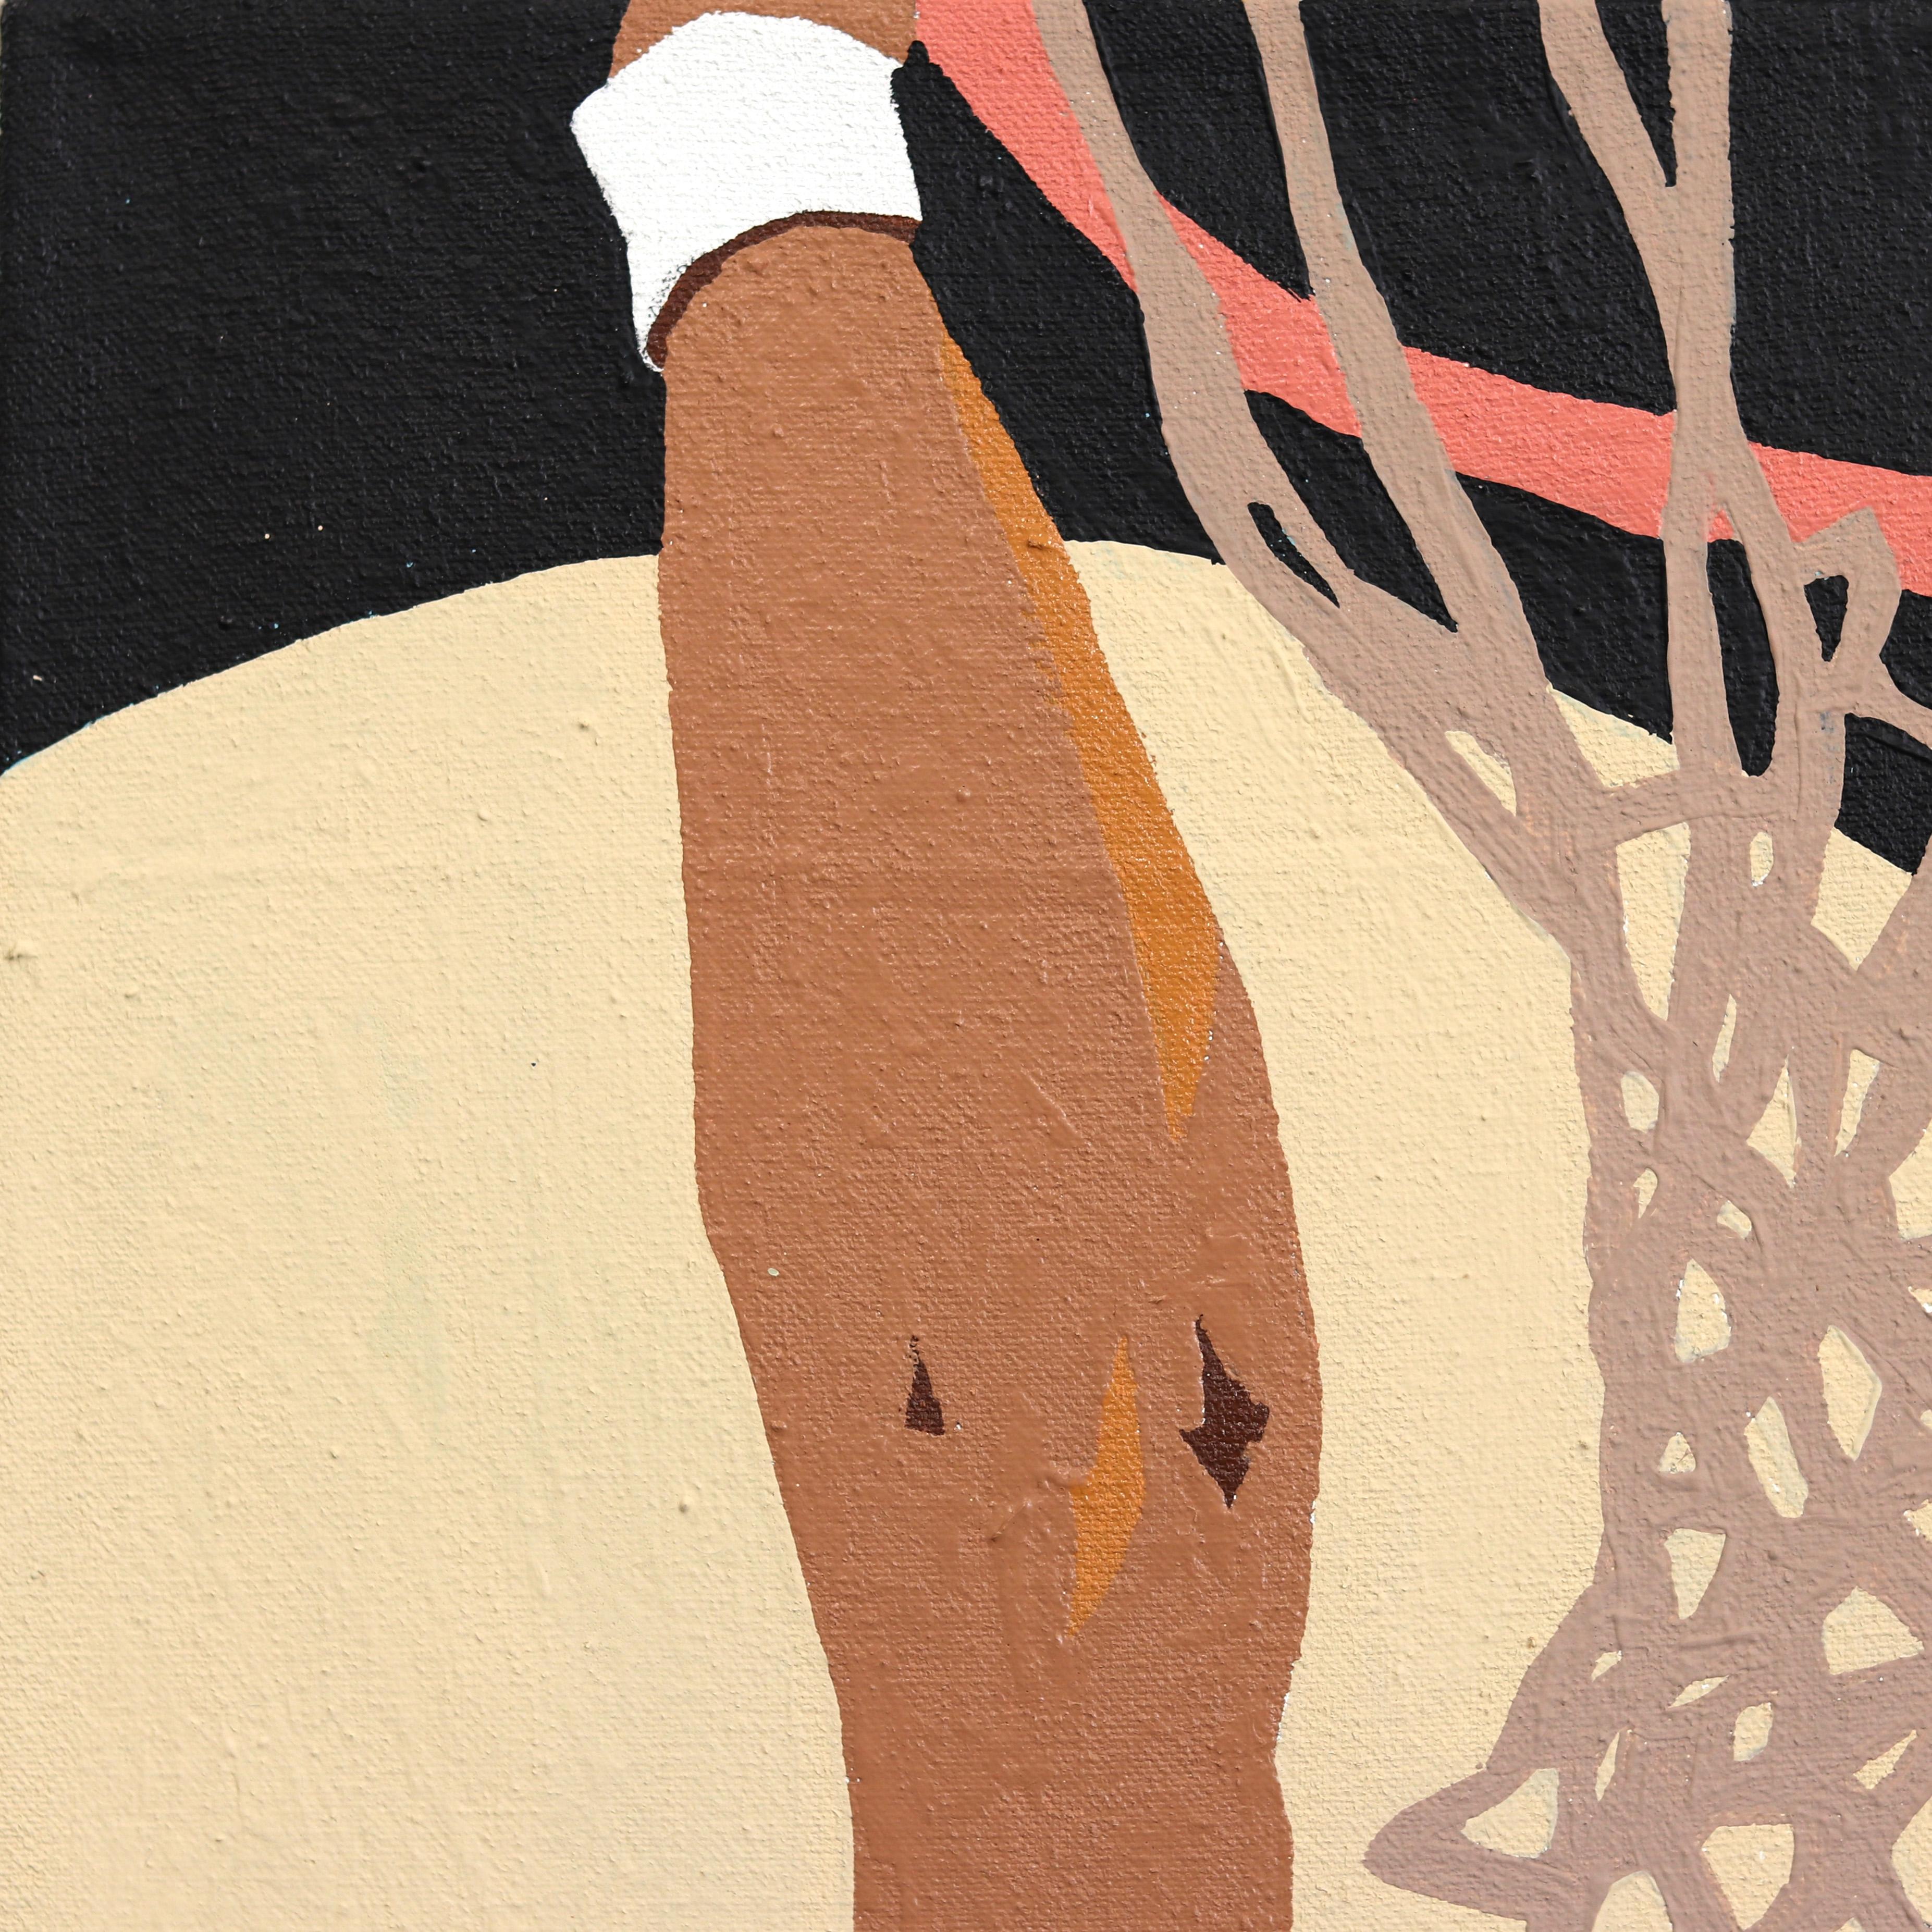 Danny Brown est un artiste urbain américain de première génération né à Los Angeles. Ses parents ont quitté Oaxaca, au Mexique, en quête d'opportunités aux États-Unis. Les œuvres d'art de Danny Brown établissent un lien intrinsèque entre lui-même et